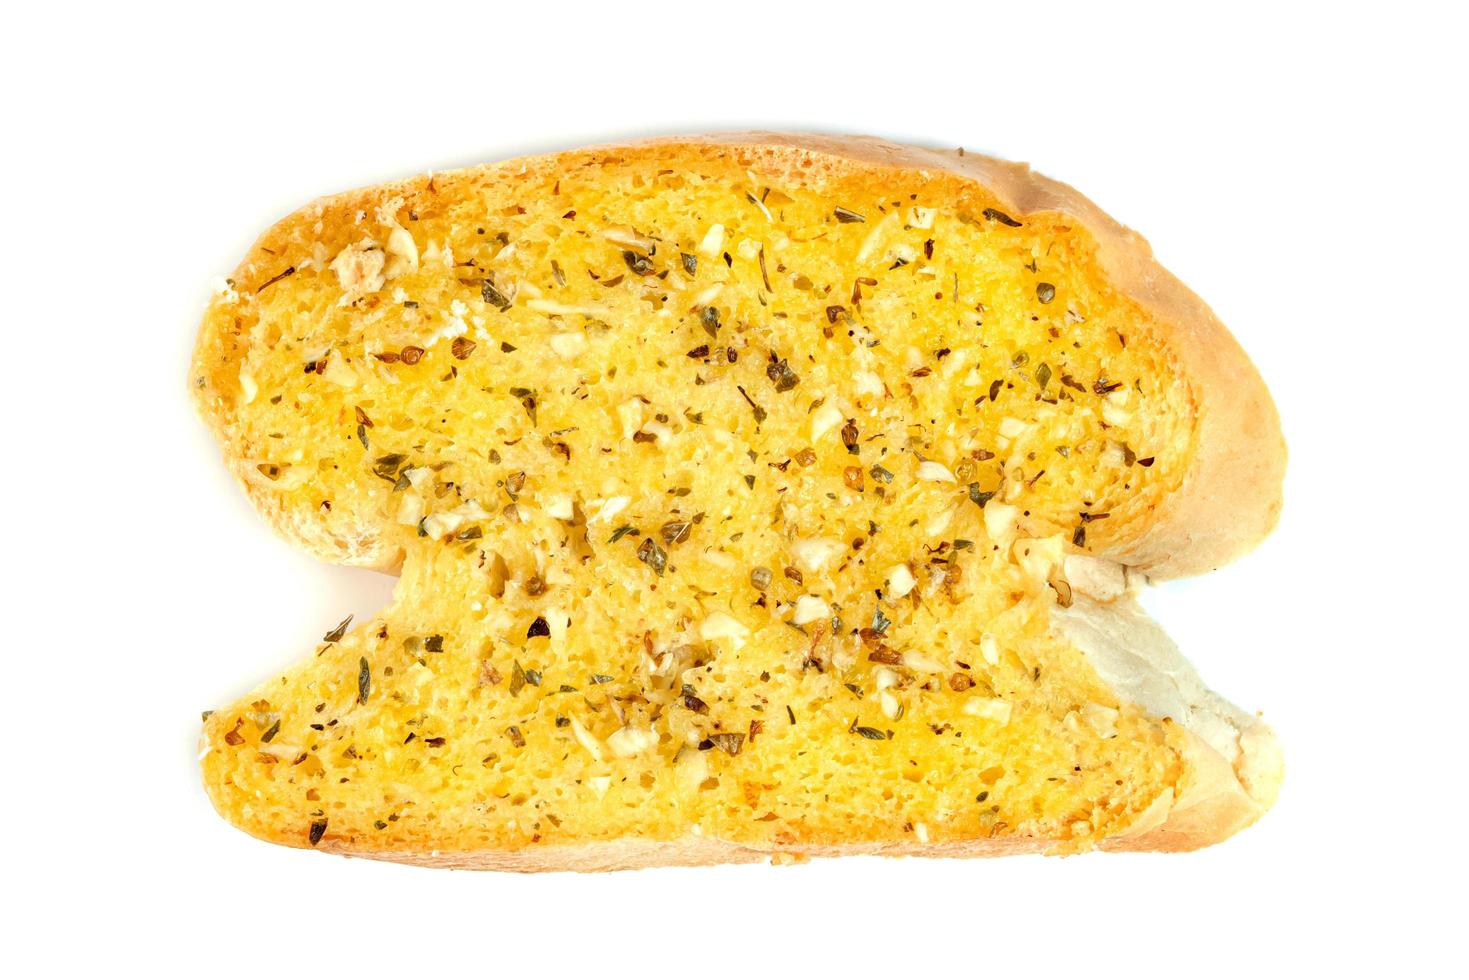 gebeten lookbrood met kaas geïsoleerd op een witte achtergrond foto